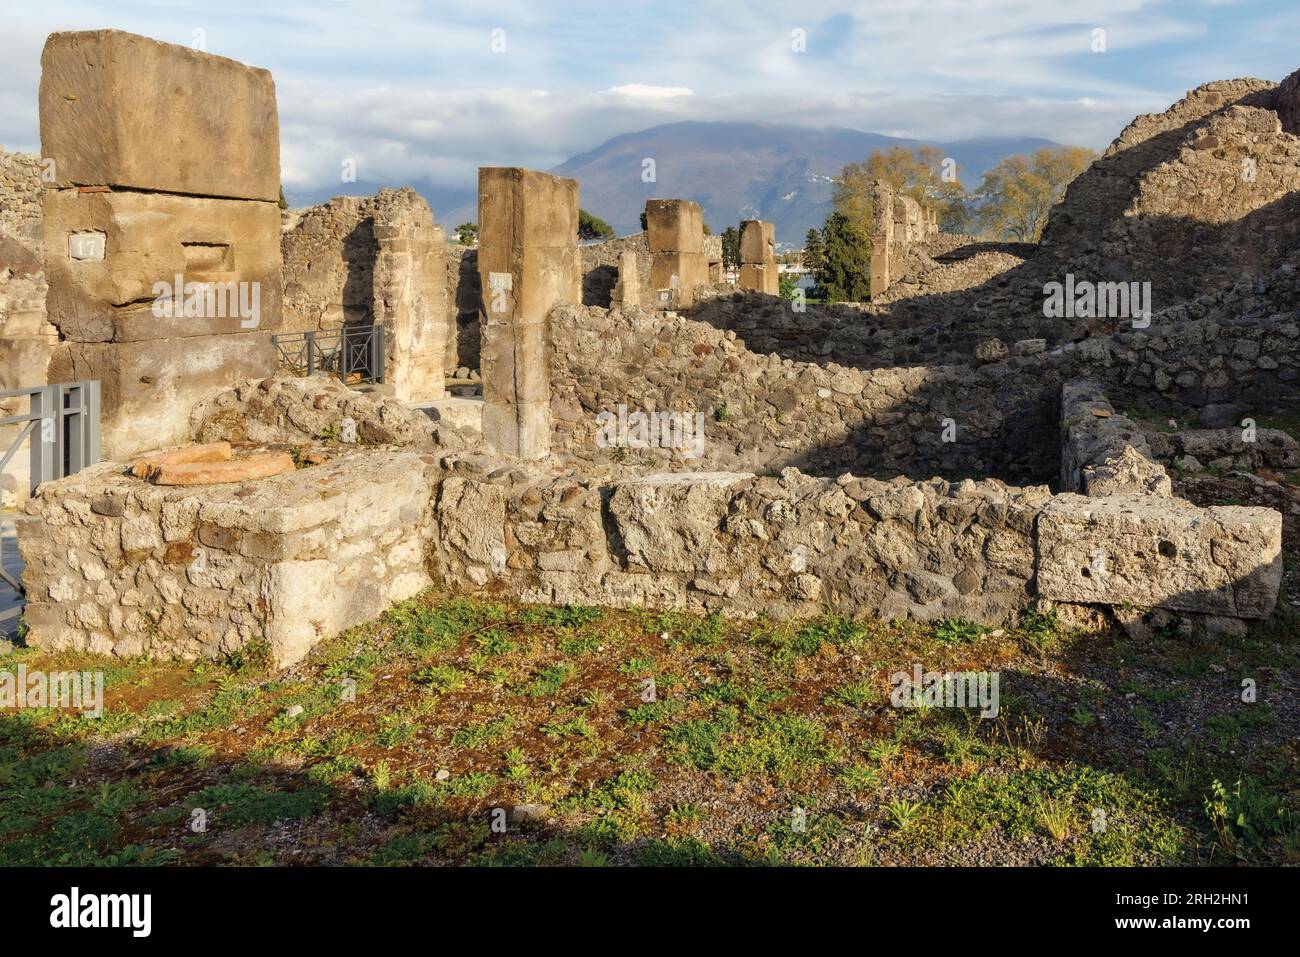 Sito archeologico di Pompei, Campania, Italia. Proprietà scavate. Pompei, Ercolano e Torre Annunziata sono collettivamente dichiarate patrimonio dell'umanità dell'UNESCO Foto Stock